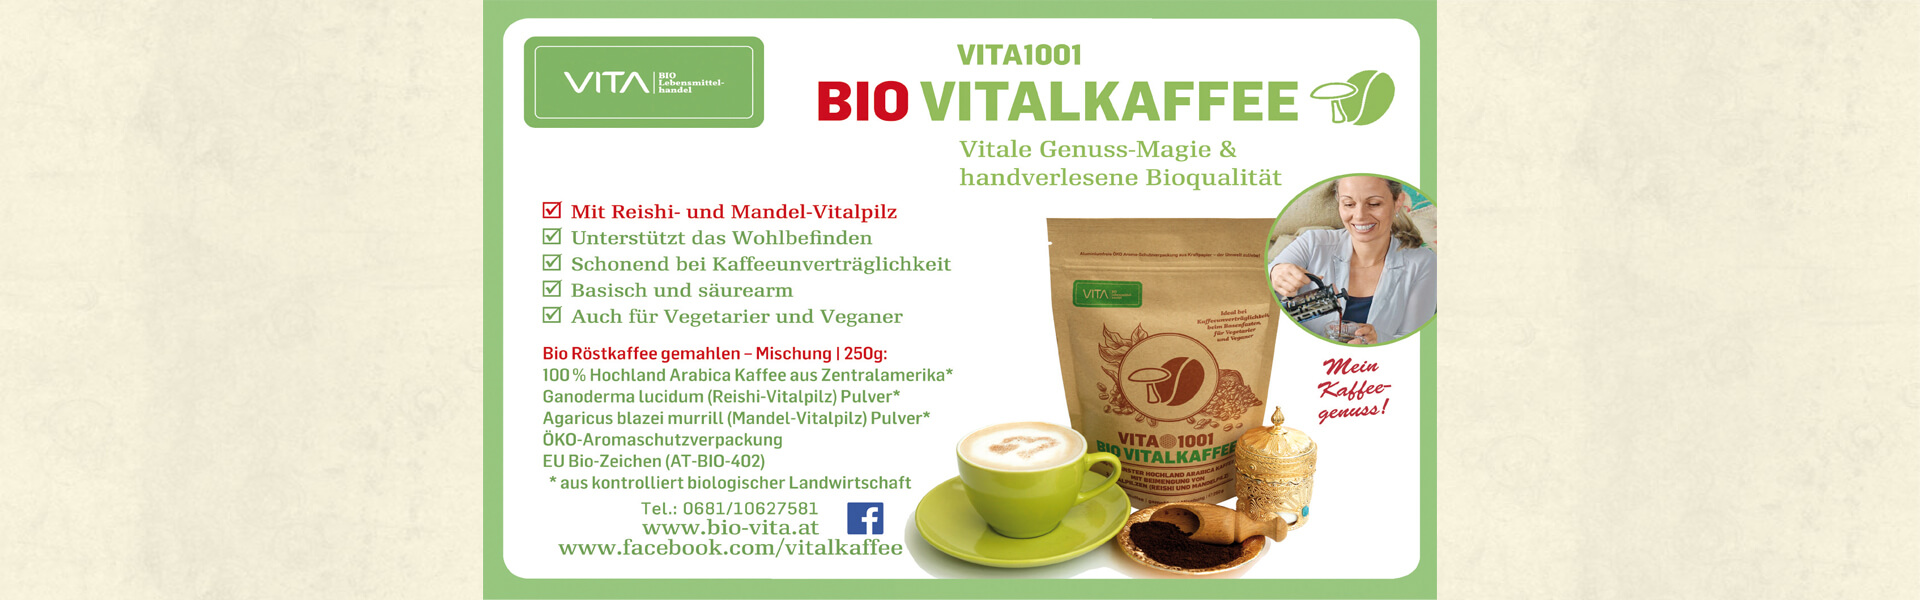 Slider04_VITA1001-Bio_Vitalkaffee-Vitale_Genuss-Magie_&_handverlesene_Bioqualitaet